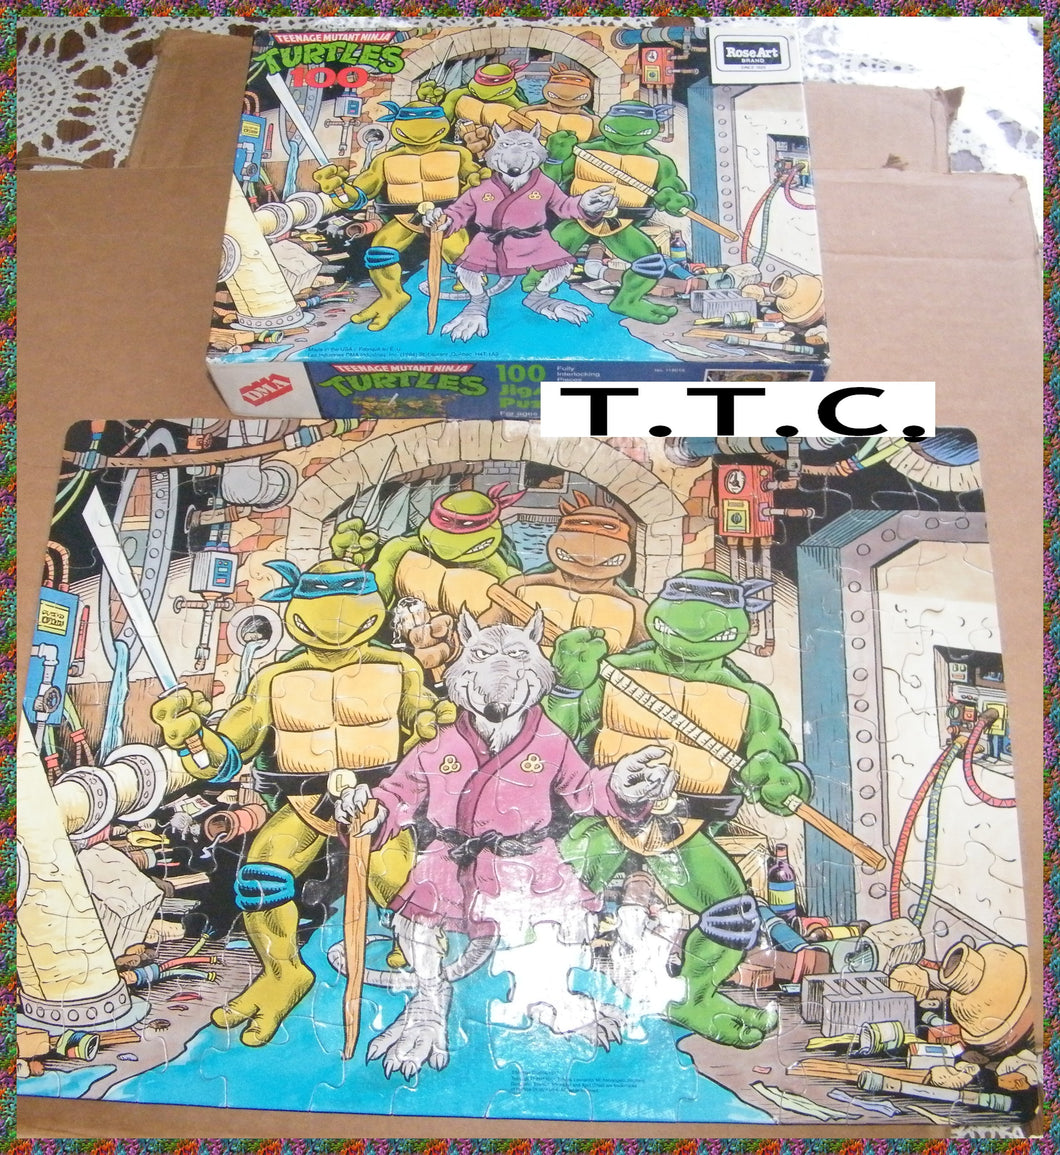 TMNT - TEENAGE MUTANT NINJA TURTLES - 100 mcx puzzle complete